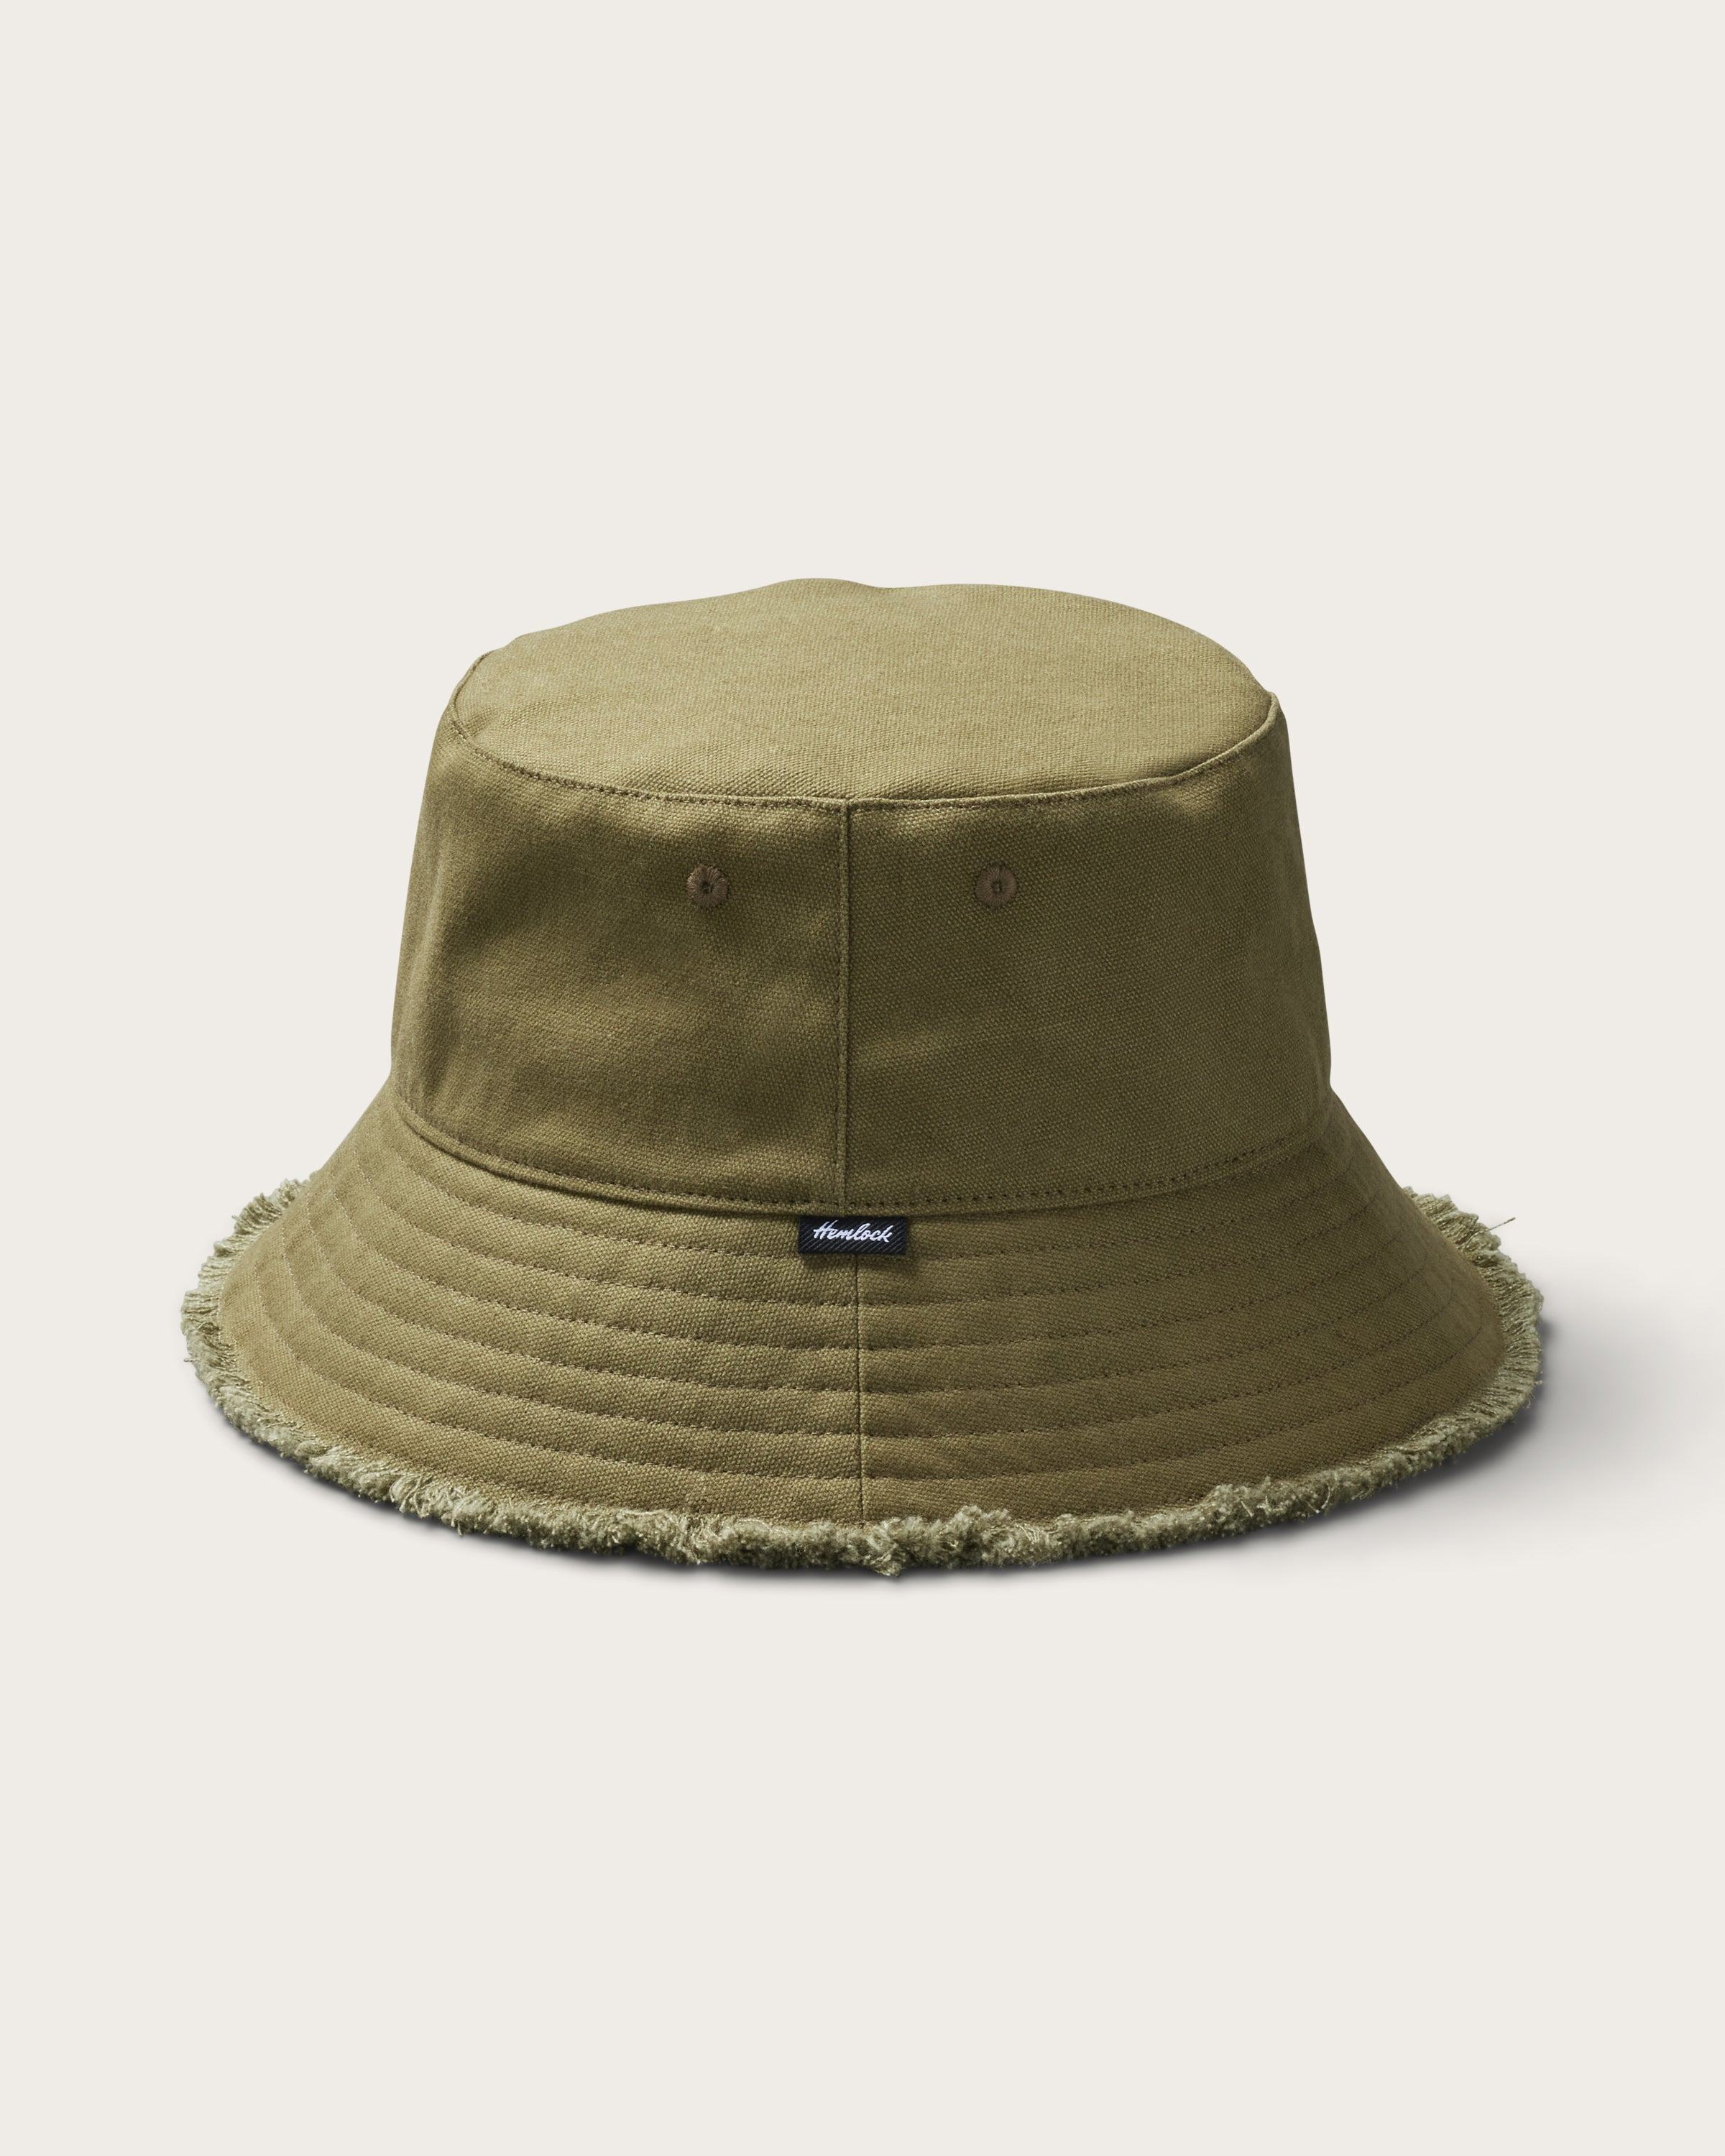 Hemlock Coronado Cotton Bucket Hat in Olive side profile